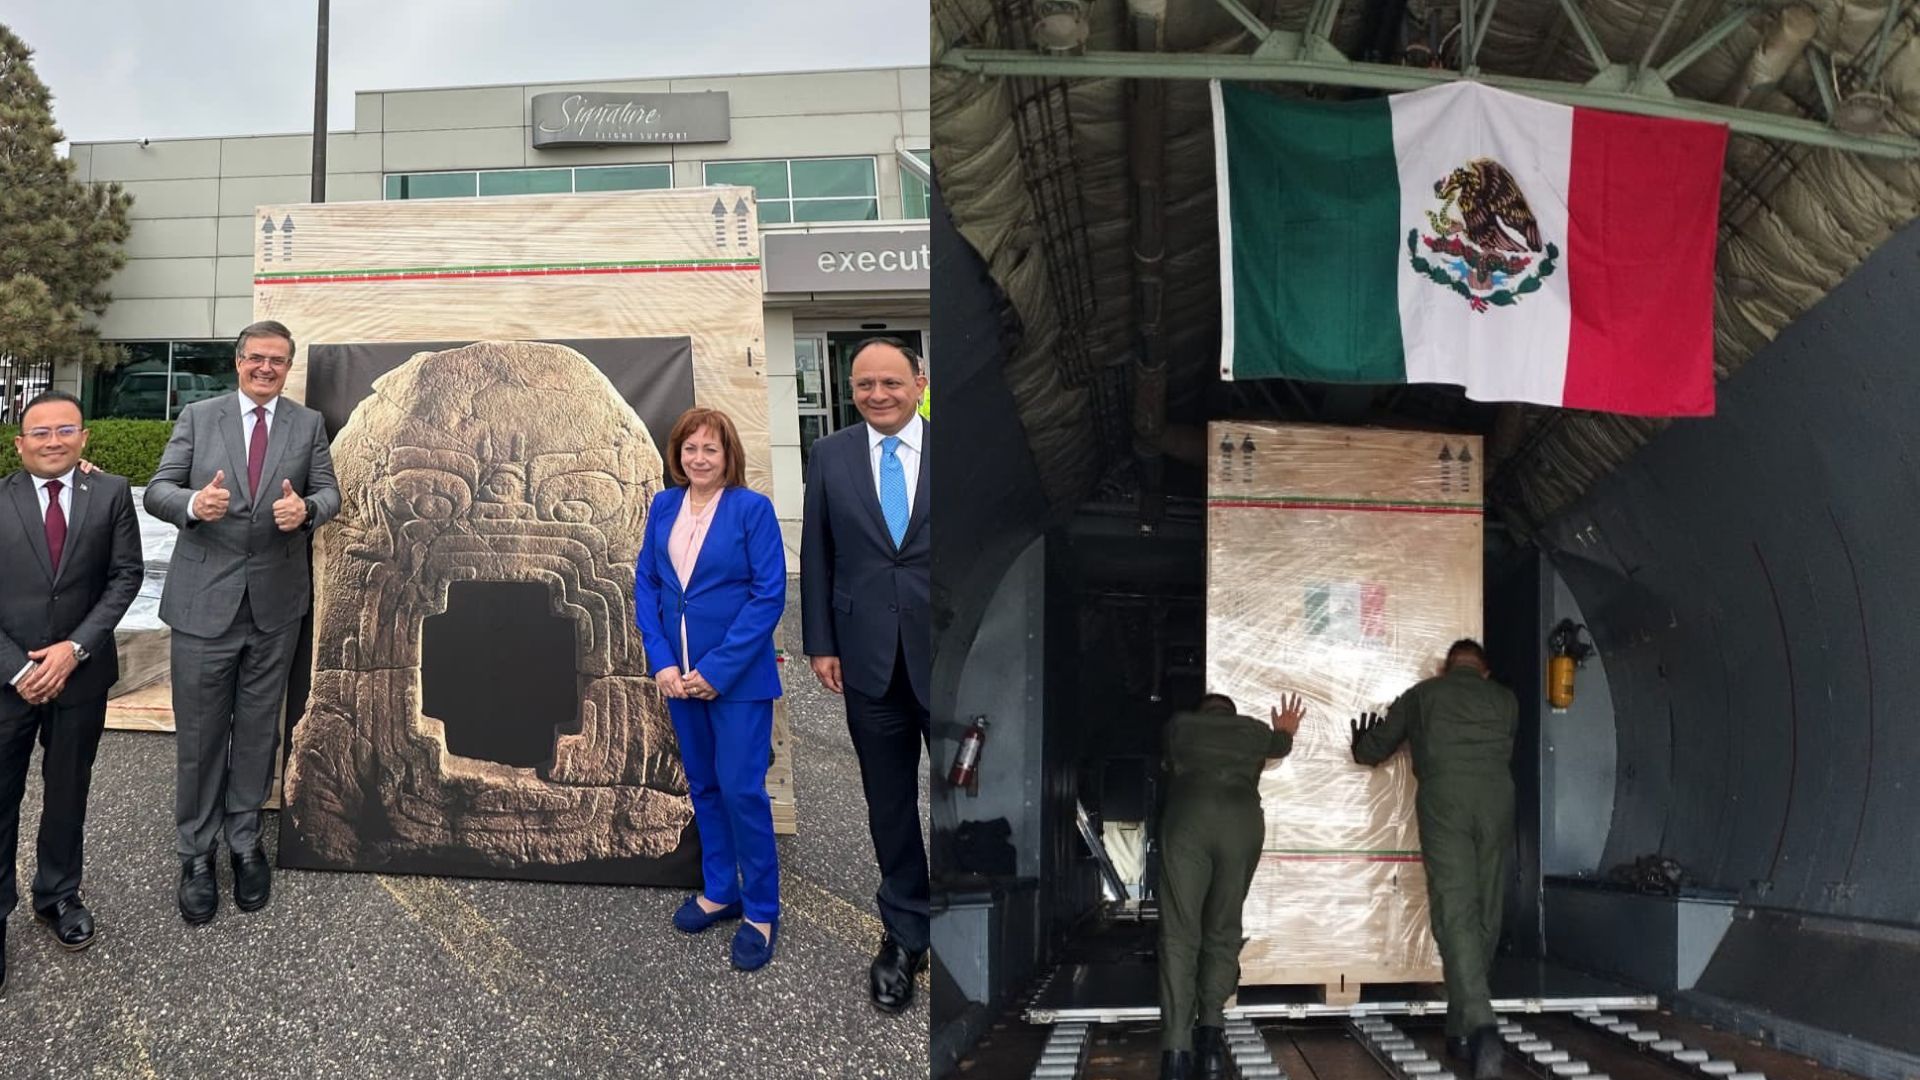 El también llamado “Monumento 9” de Chalcatzingo fue sustraído de México ilegalmente hace más de 50 años.
(@SRE_mx)